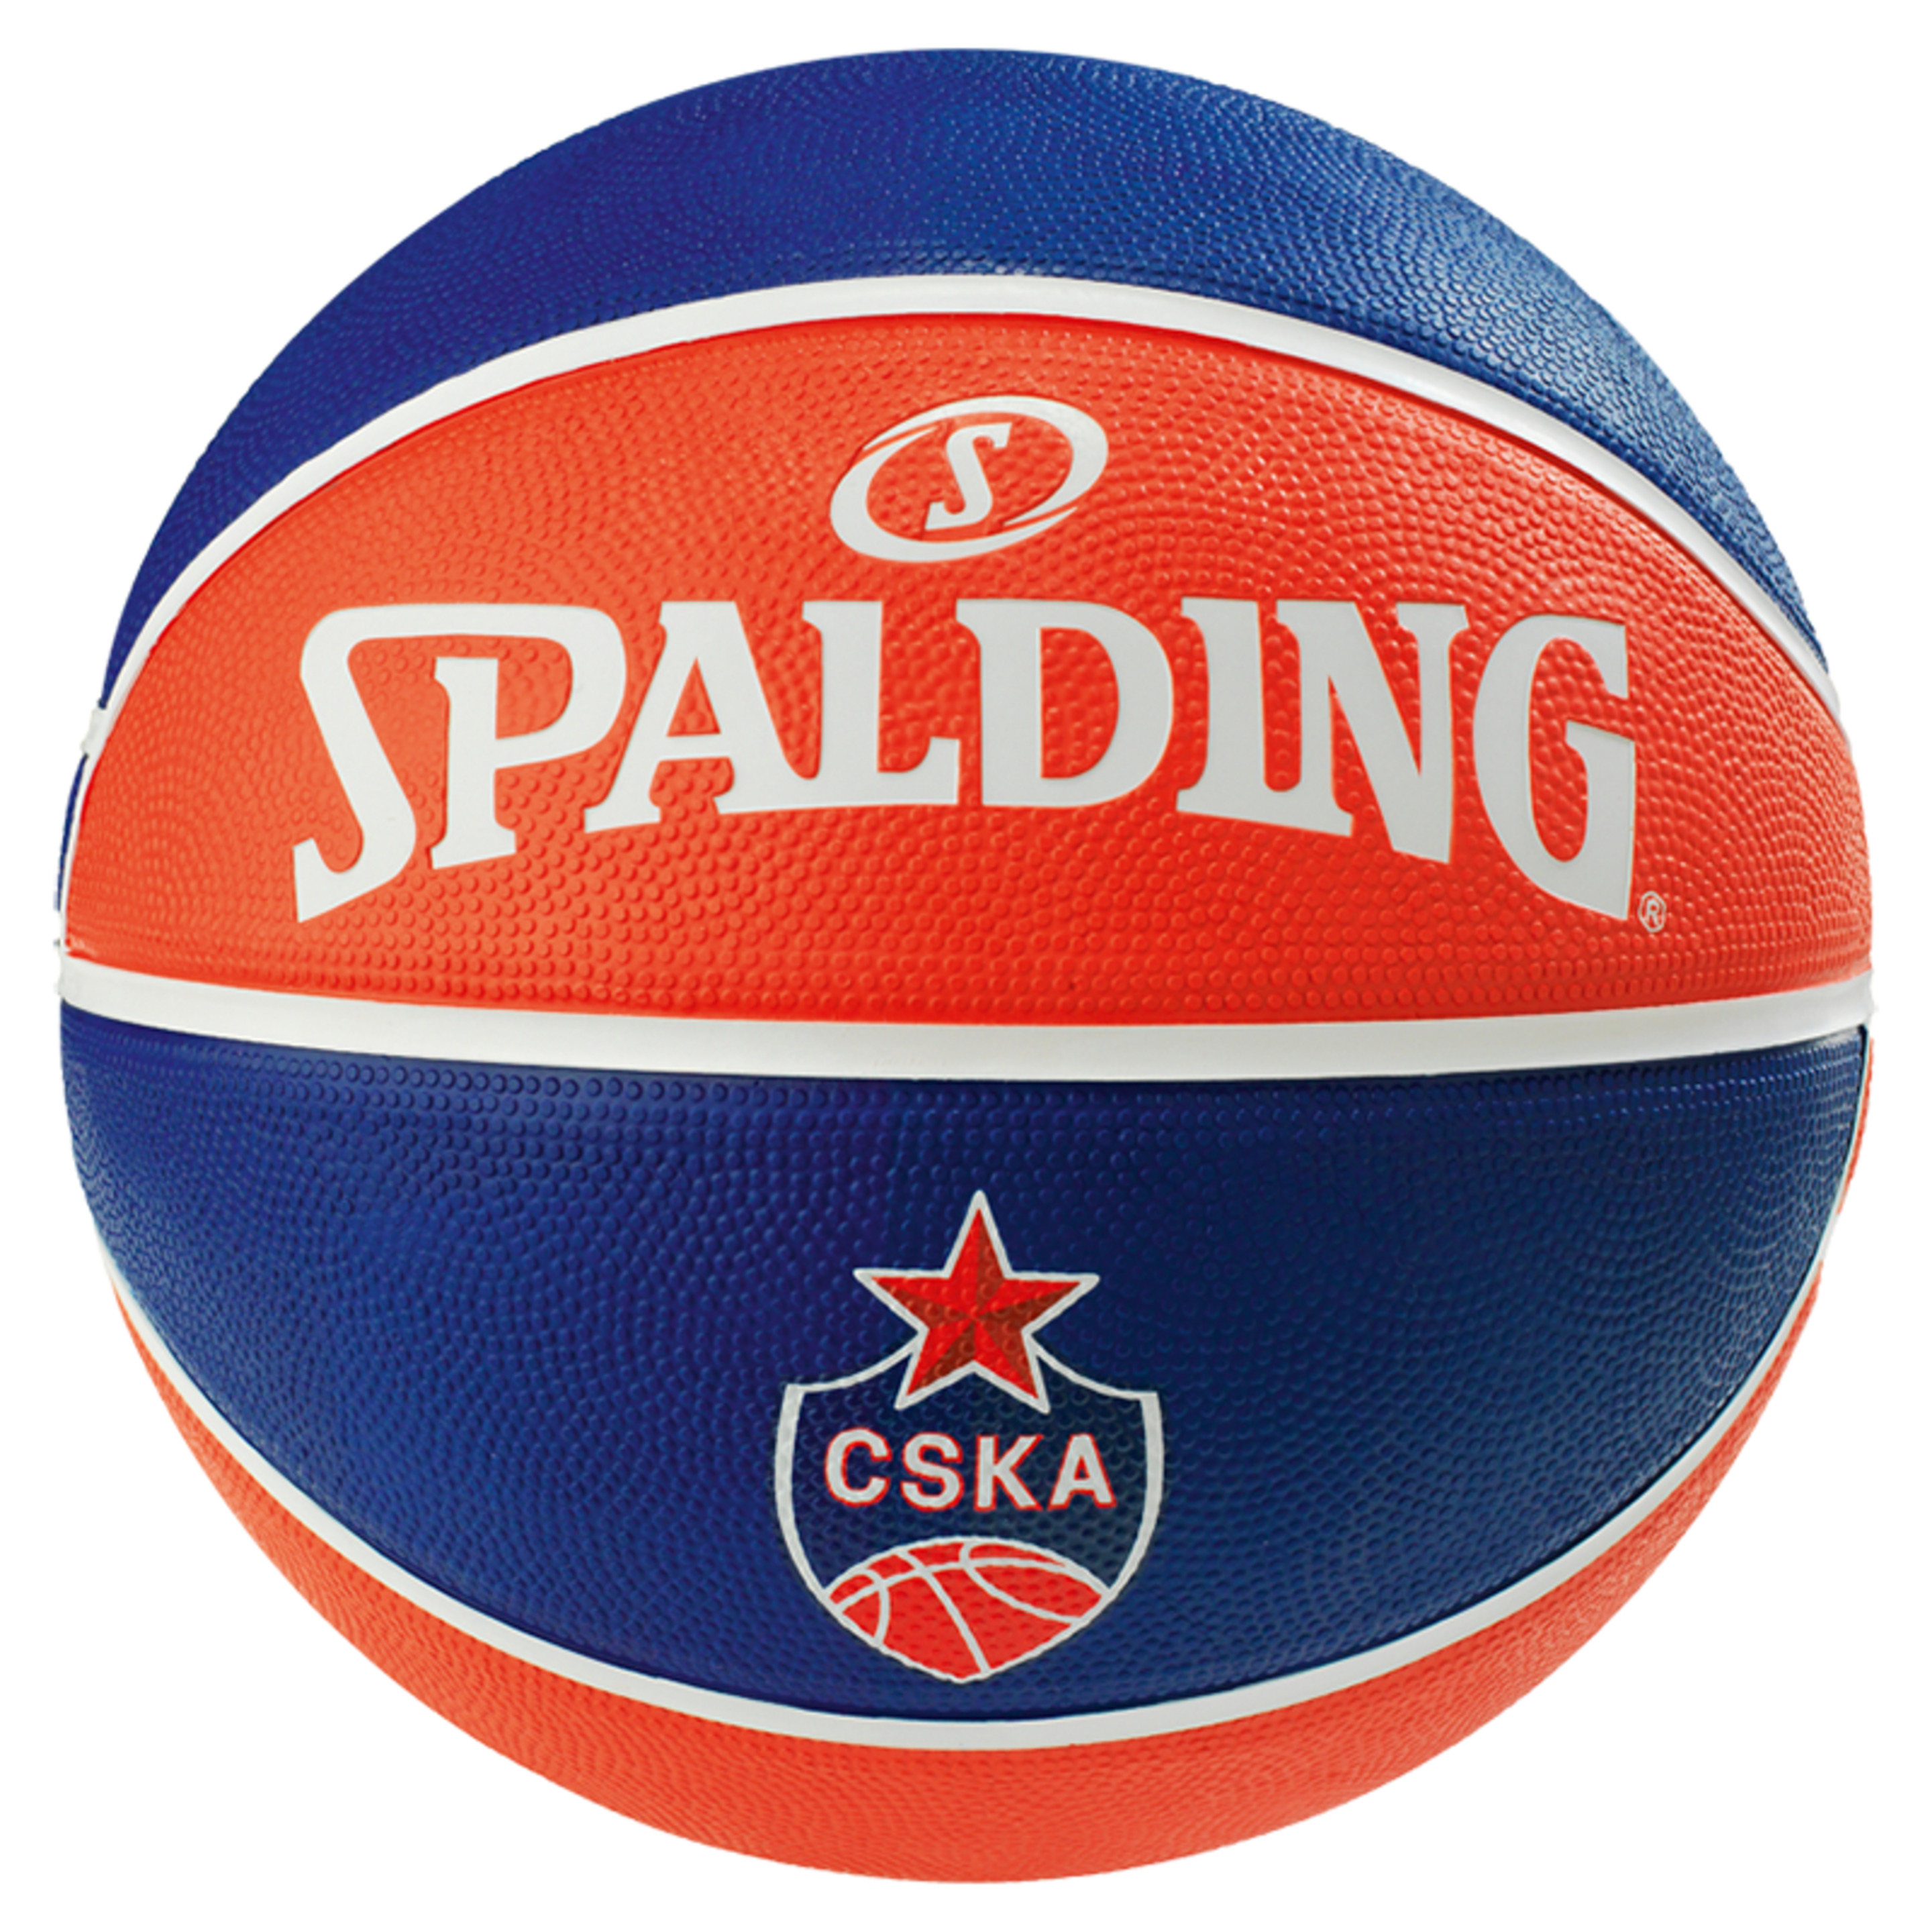 El Team Cska Moscow Sz.7 (83-779z) Blue Spalding